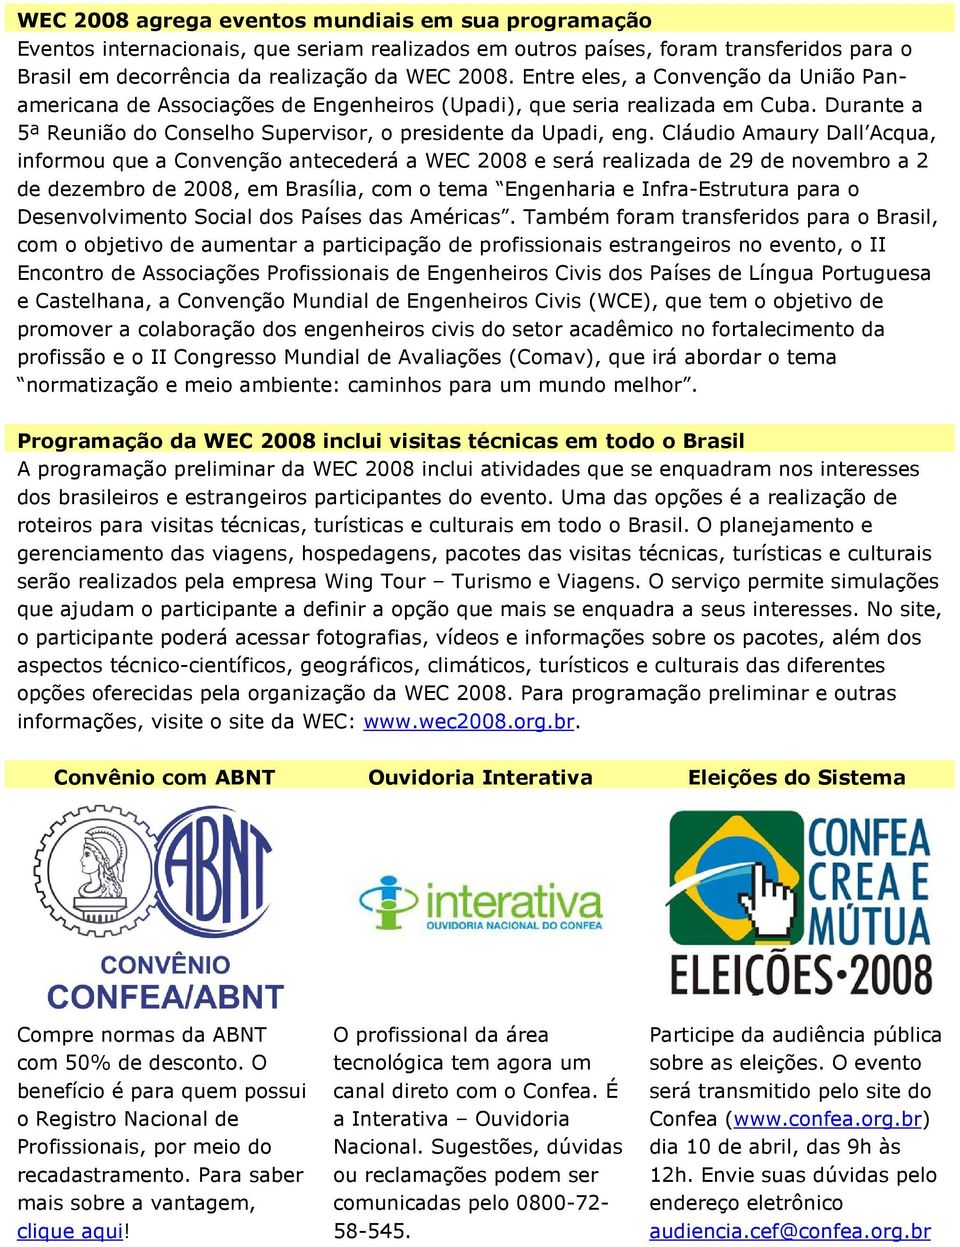 Cláudio Amaury Dall Acqua, informou que a Convenção antecederá a WEC 2008 e será realizada de 29 de novembro a 2 de dezembro de 2008, em Brasília, com o tema Engenharia e Infra-Estrutura para o